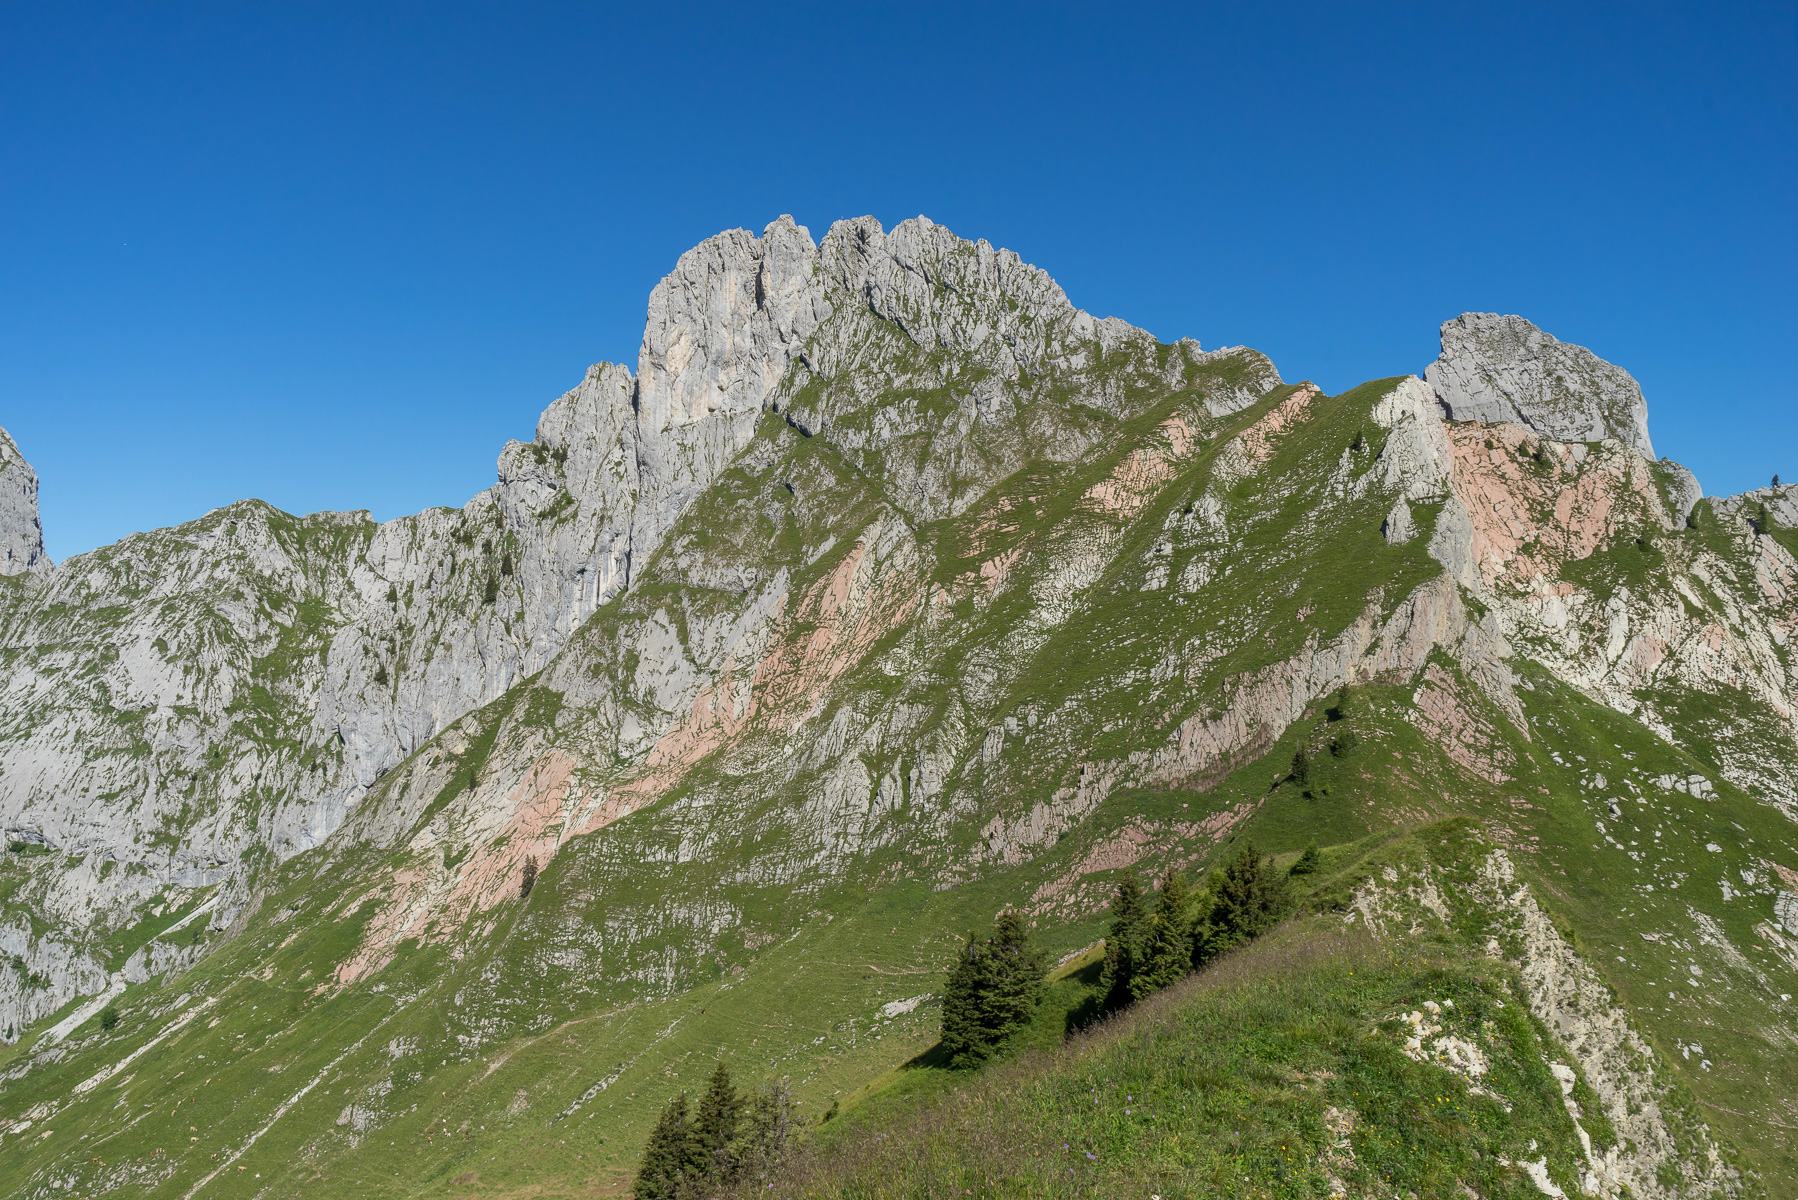 Rückblick zur Dent de Ruth. Der Aufstiegsweg führt vom Sattel zunächst hoch und quert dann aufsteigend bis in die Gipfelrinne.